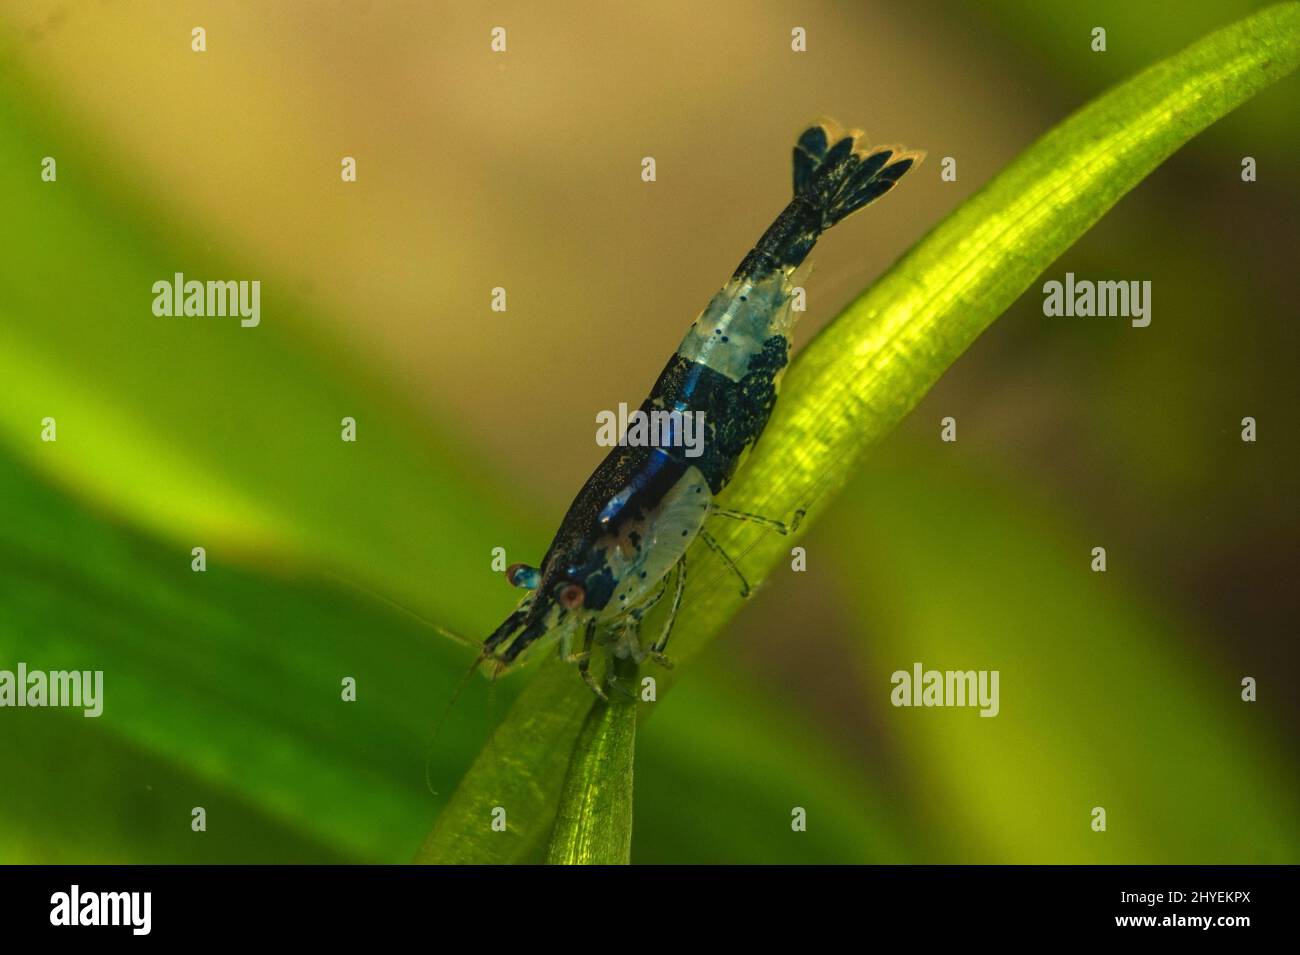 Closeup of Neocaridina Shrimp on a green stick Stock Photo